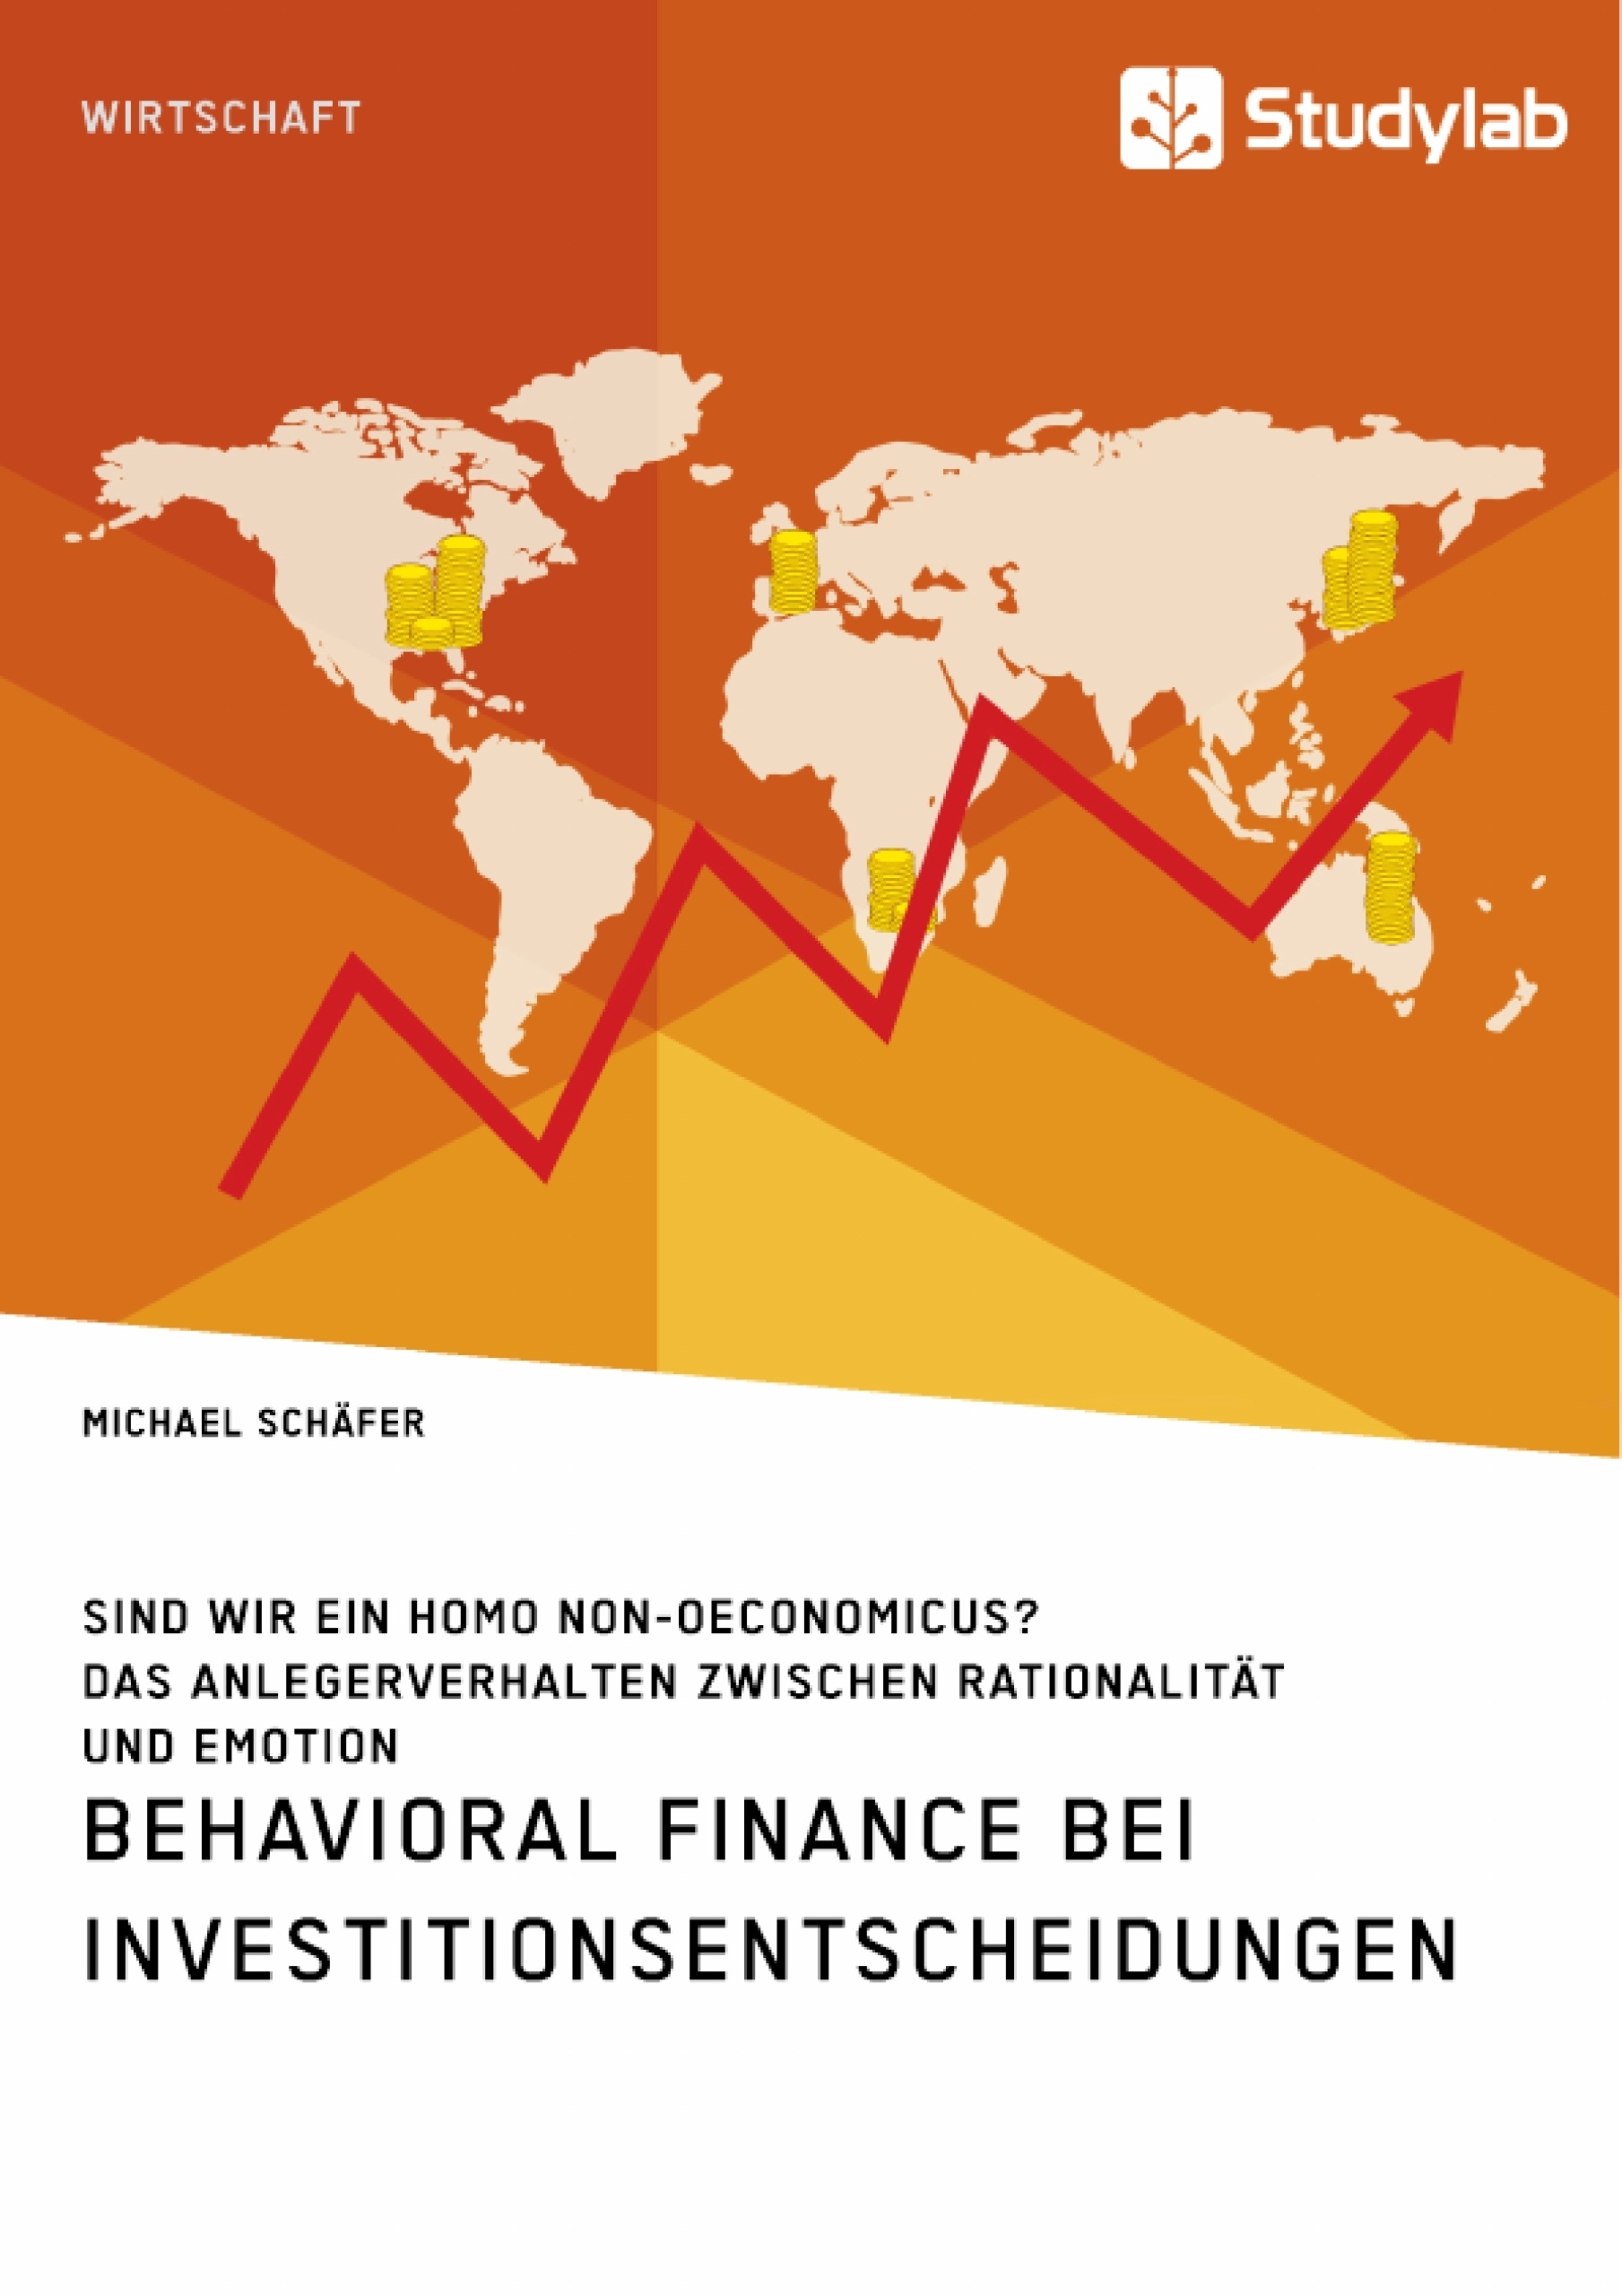 Título: Behavioral Finance bei Investitionsentscheidungen. Das Anlegerverhalten zwischen Rationalität und Emotion